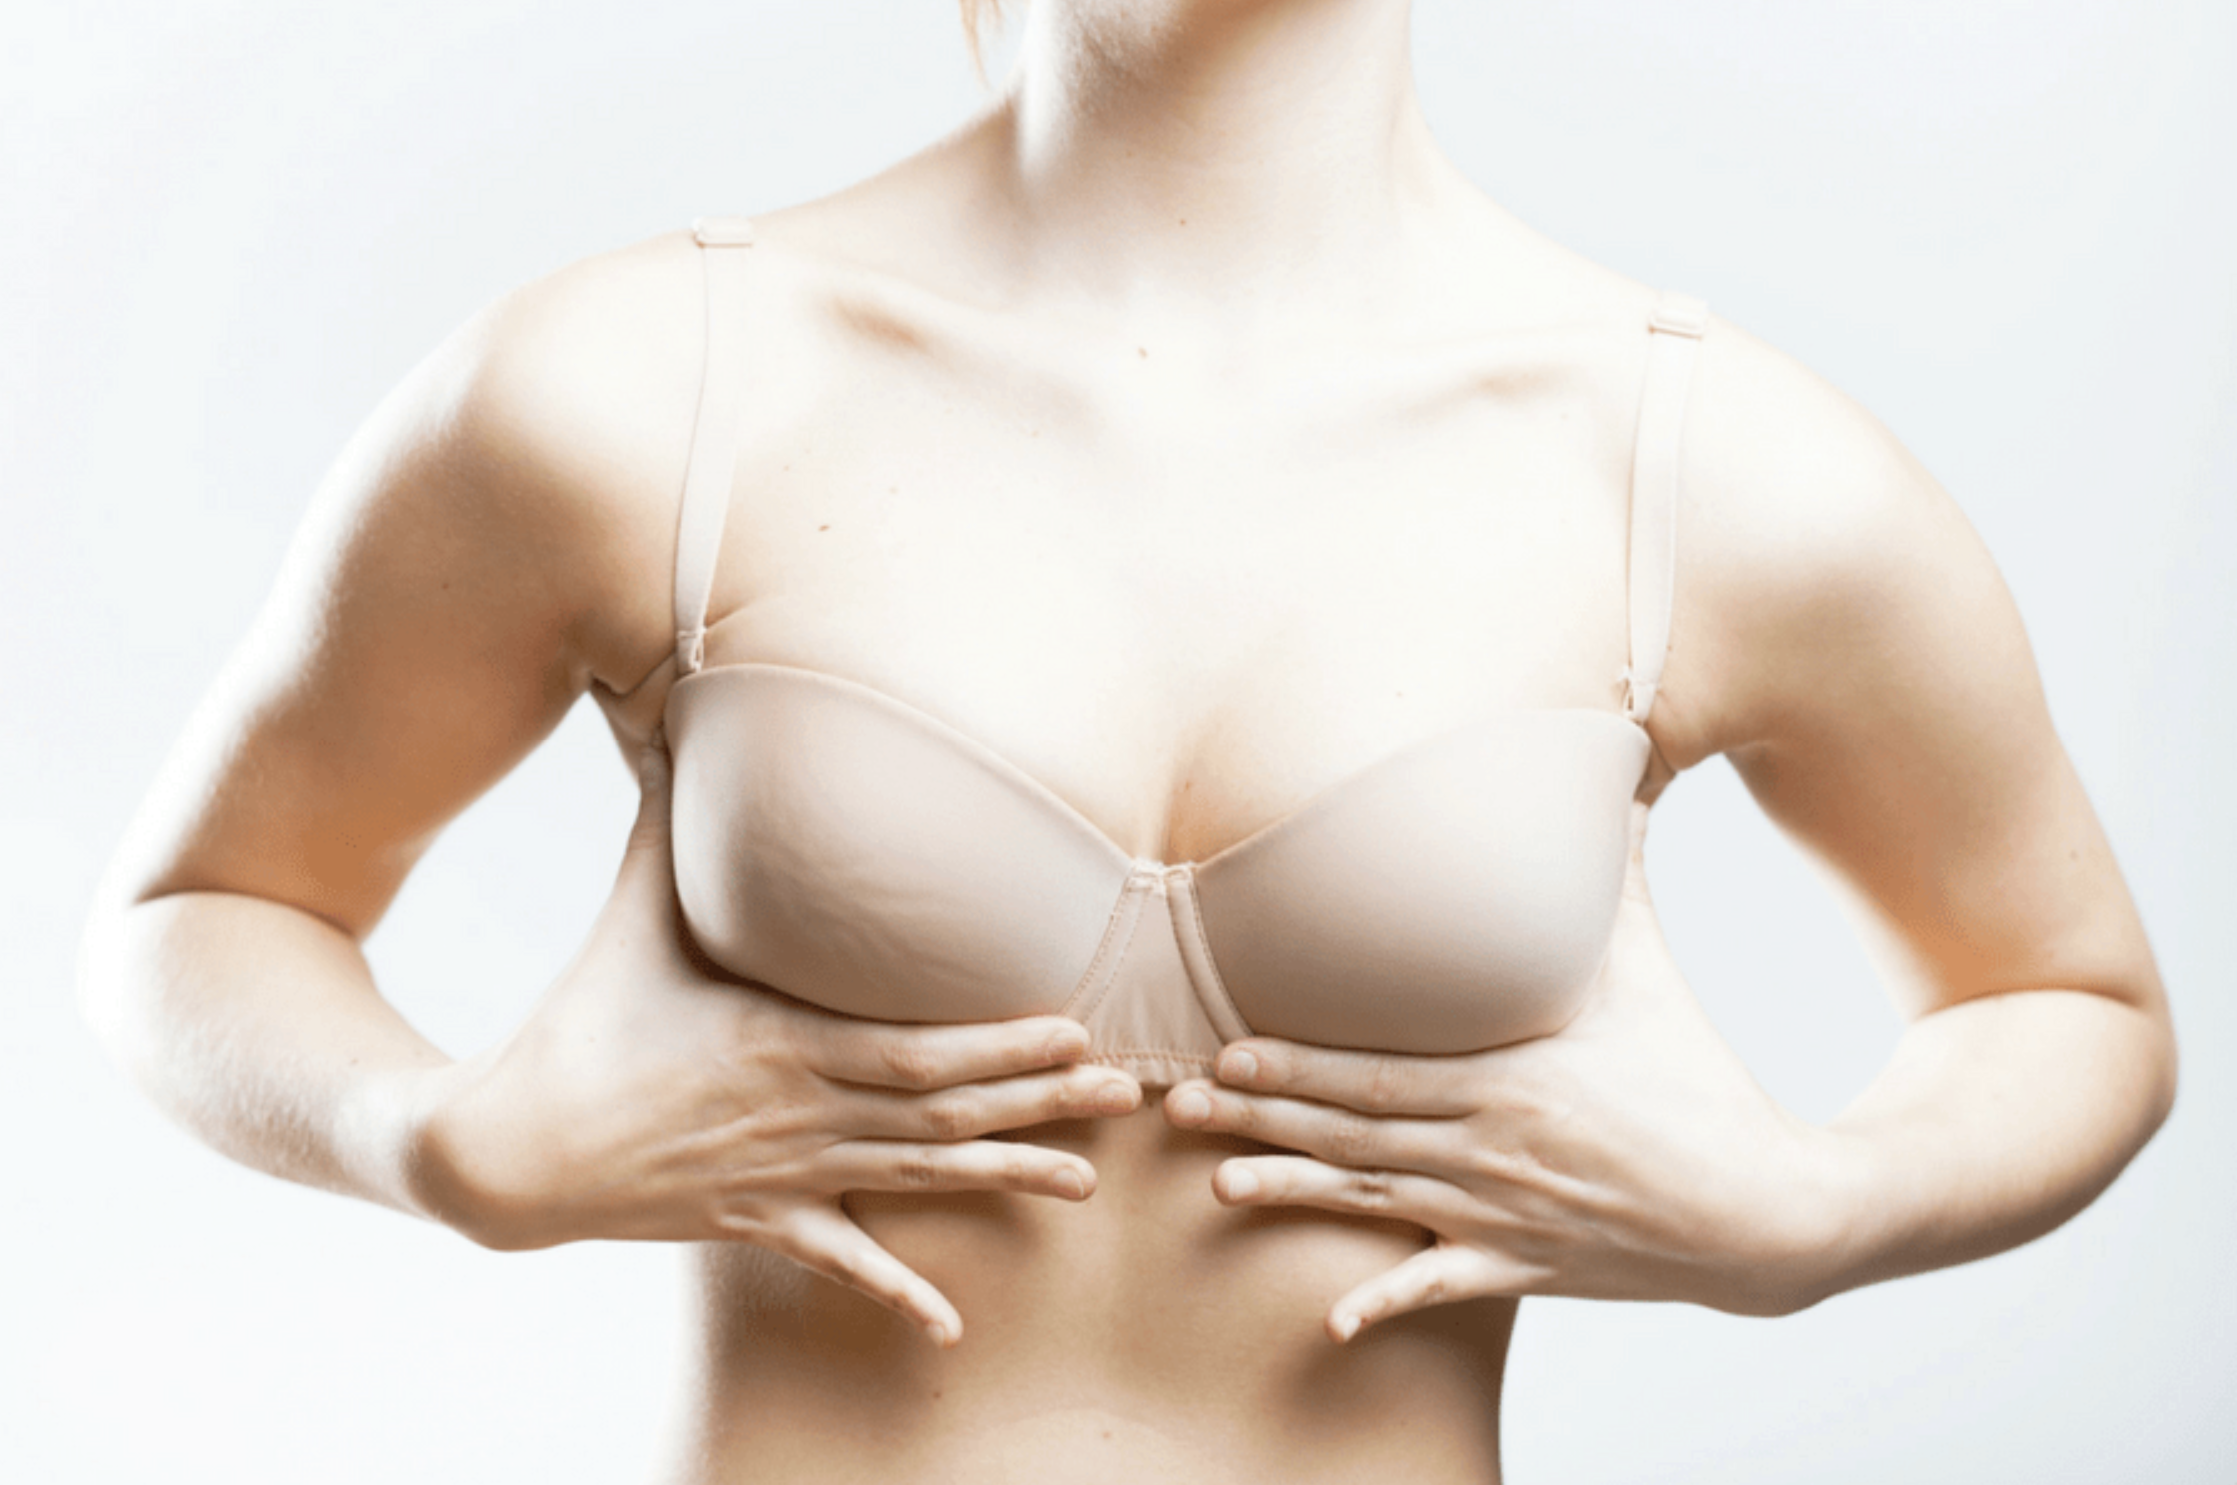 سوتین فنر دار: آیا پوشیدن کرست های فنری موجب بروز سرطان پستان در زنان می شود؟